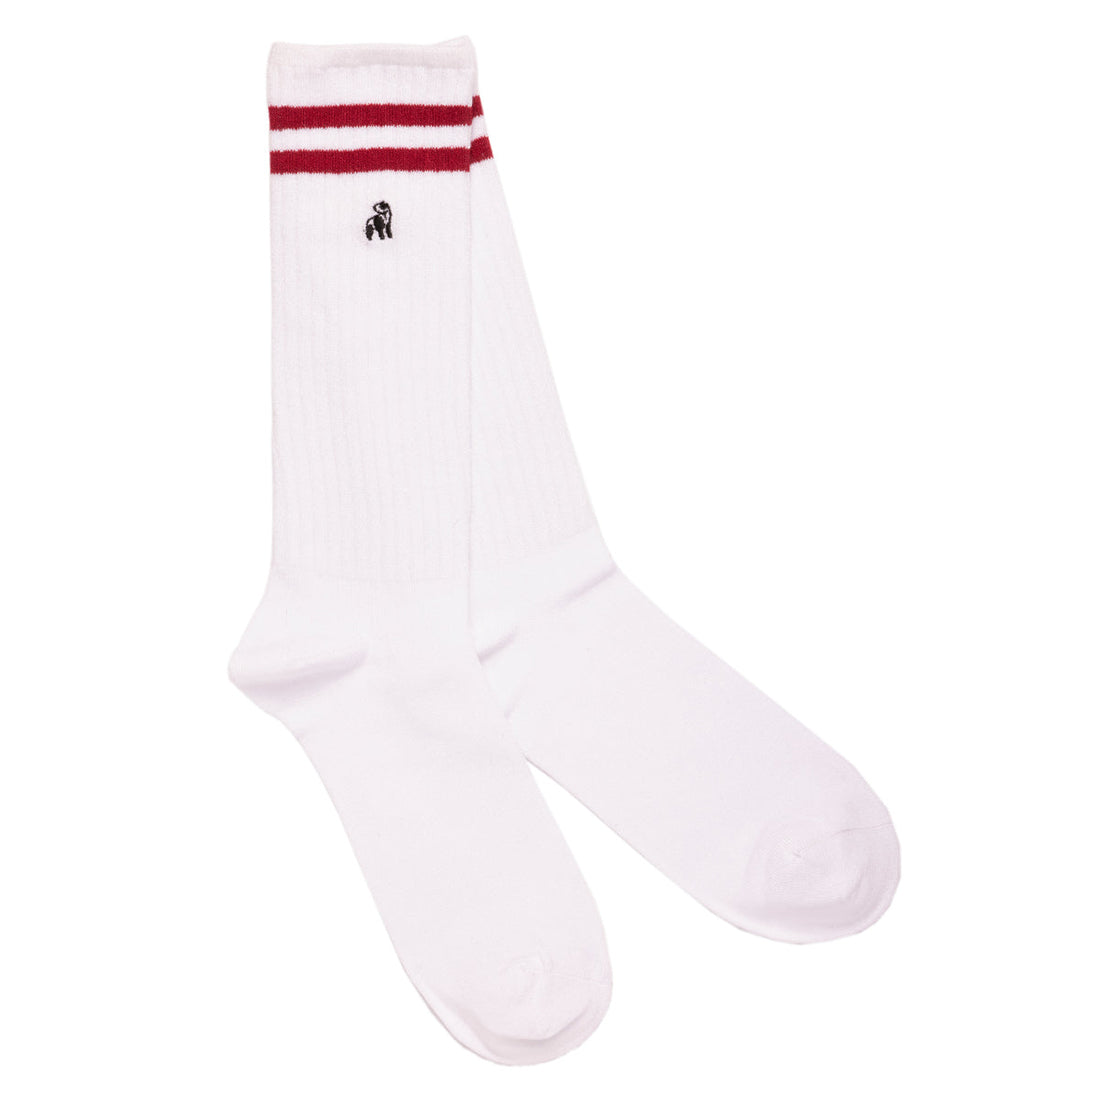 socks-white-athletic-bamboo-socks-v2-1_7d7e4423-6780-42b1-9bf2-d6a542b565bf.jpg